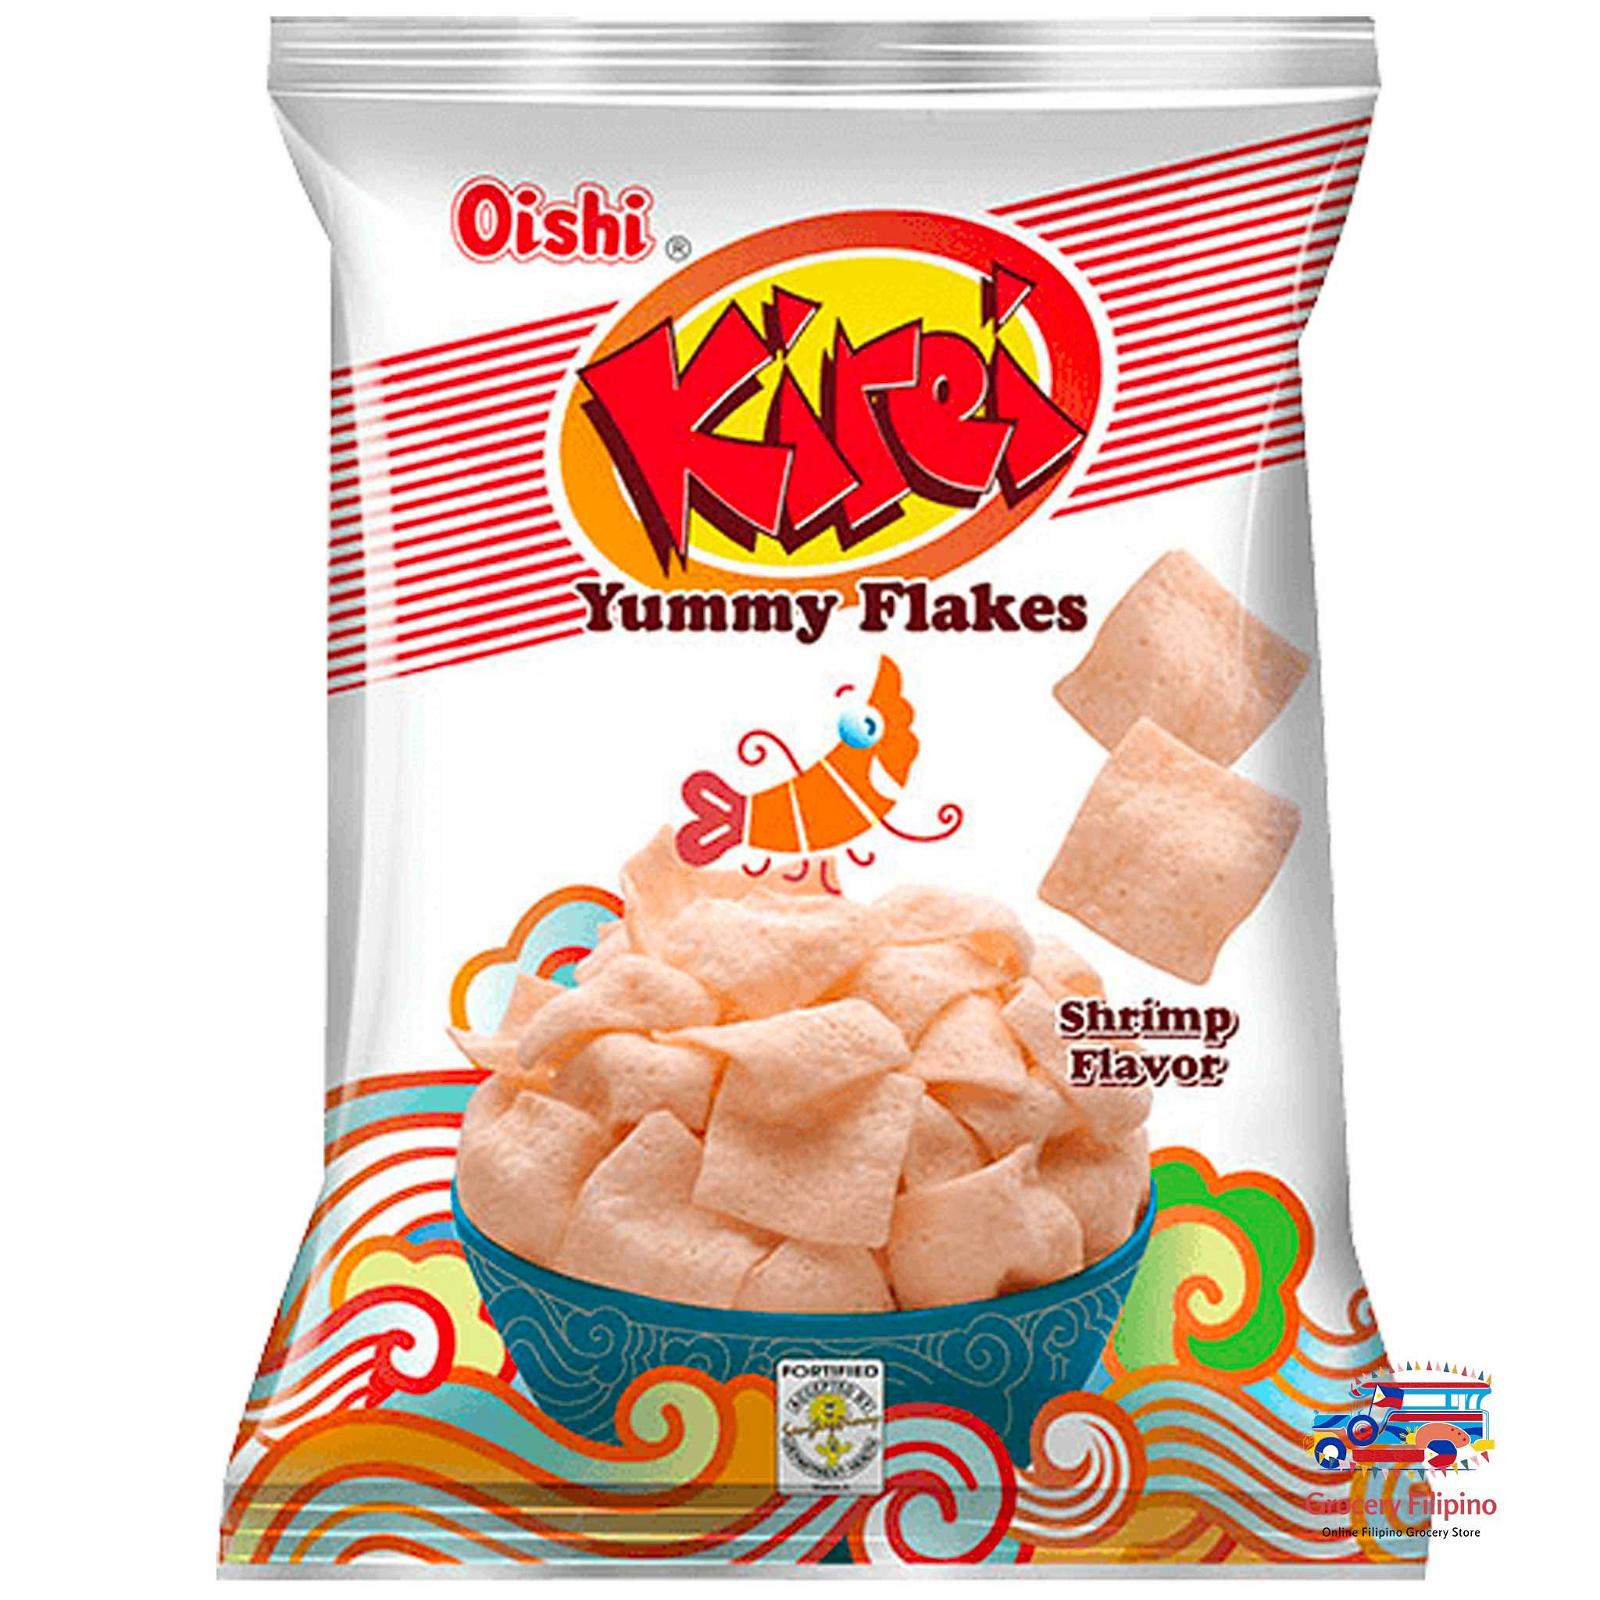 Download Logo Snack Tofu Chips - KibrisPDR